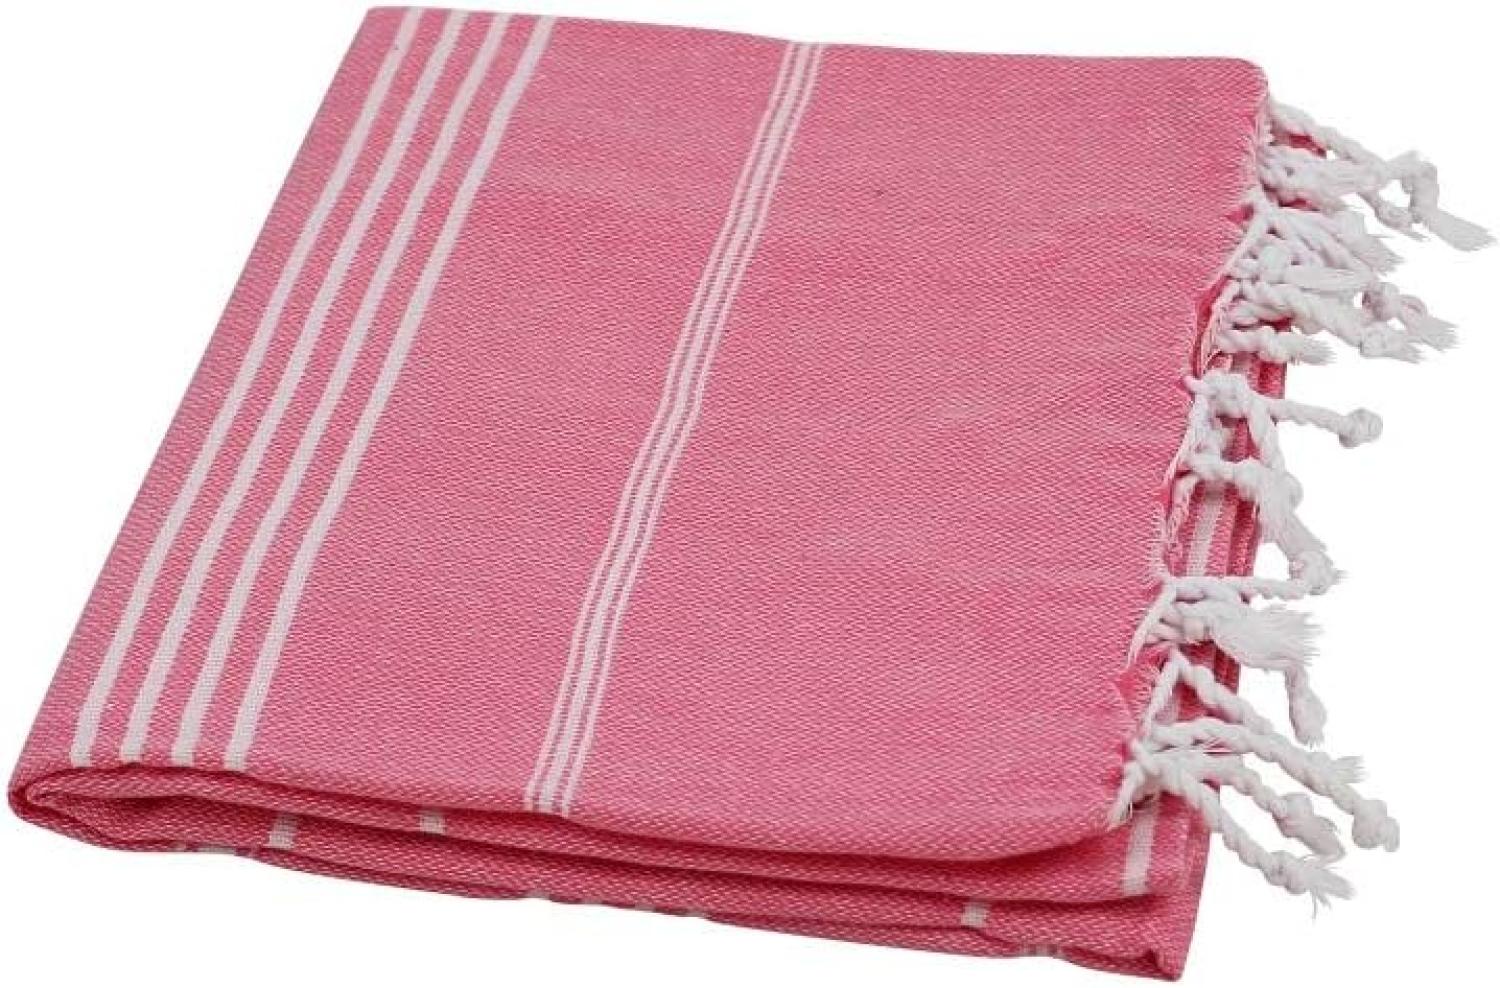 Hamamtuch Sultan pink mit weißen Streifen ca. 100x180 cm Bild 1